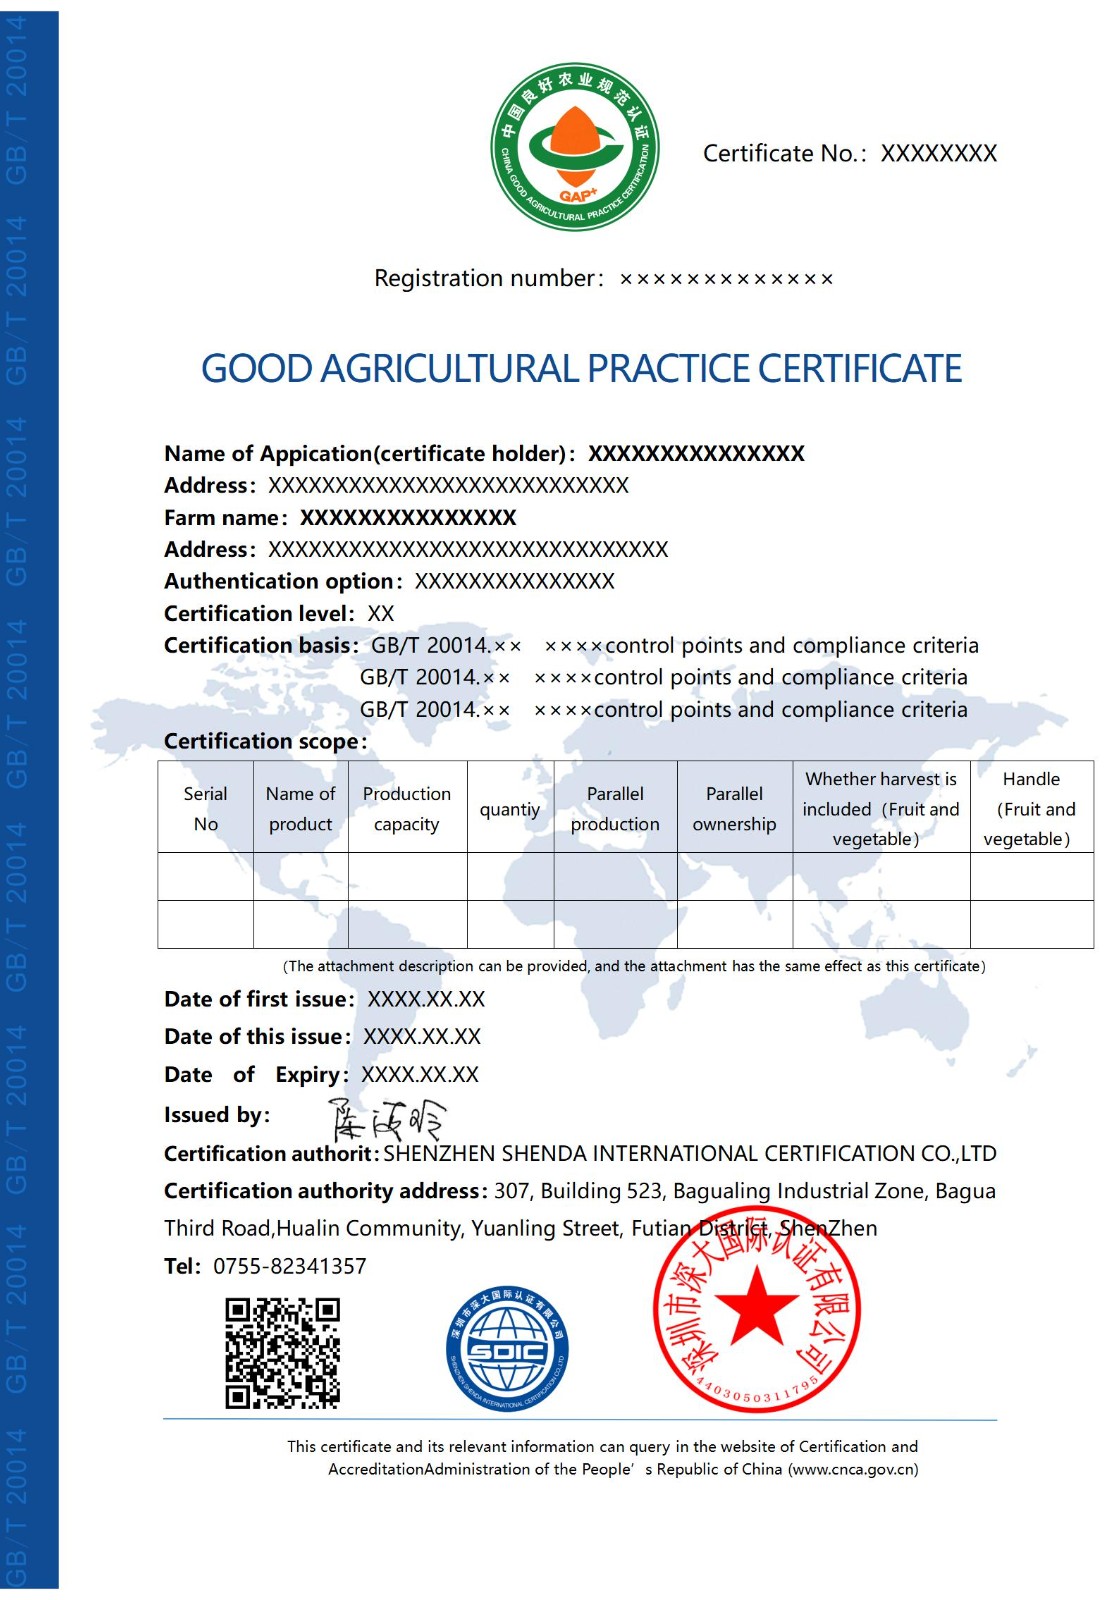 良好农业规范认证证书-英文版